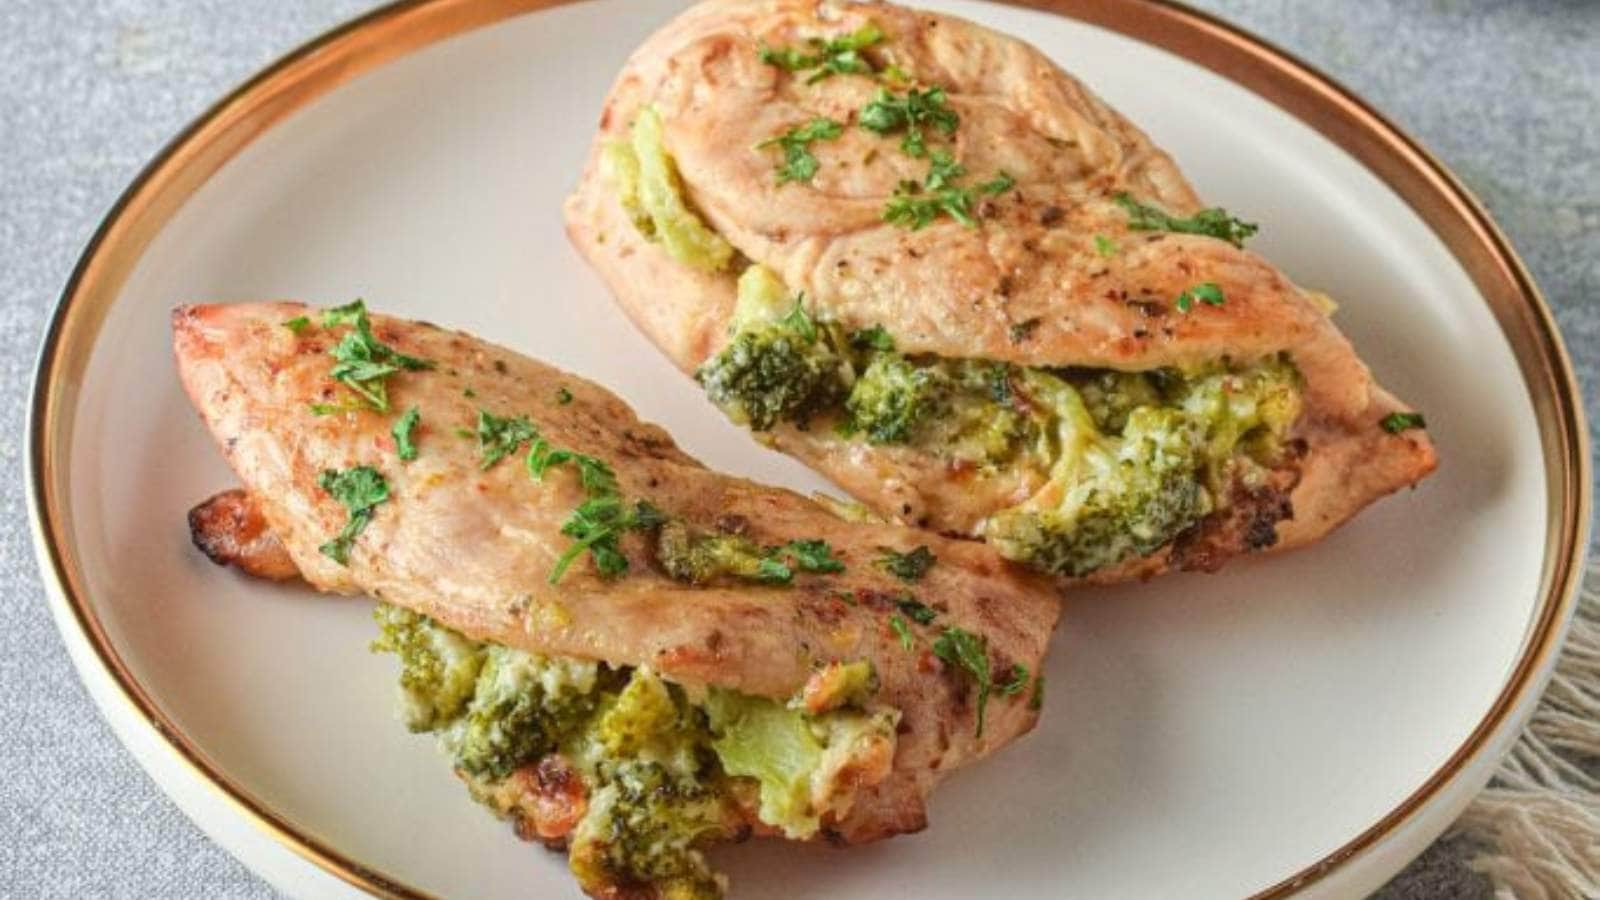 Broccoli Cheddar Stuffed Chicken Breast Recipe recipe by Food Plus Words.